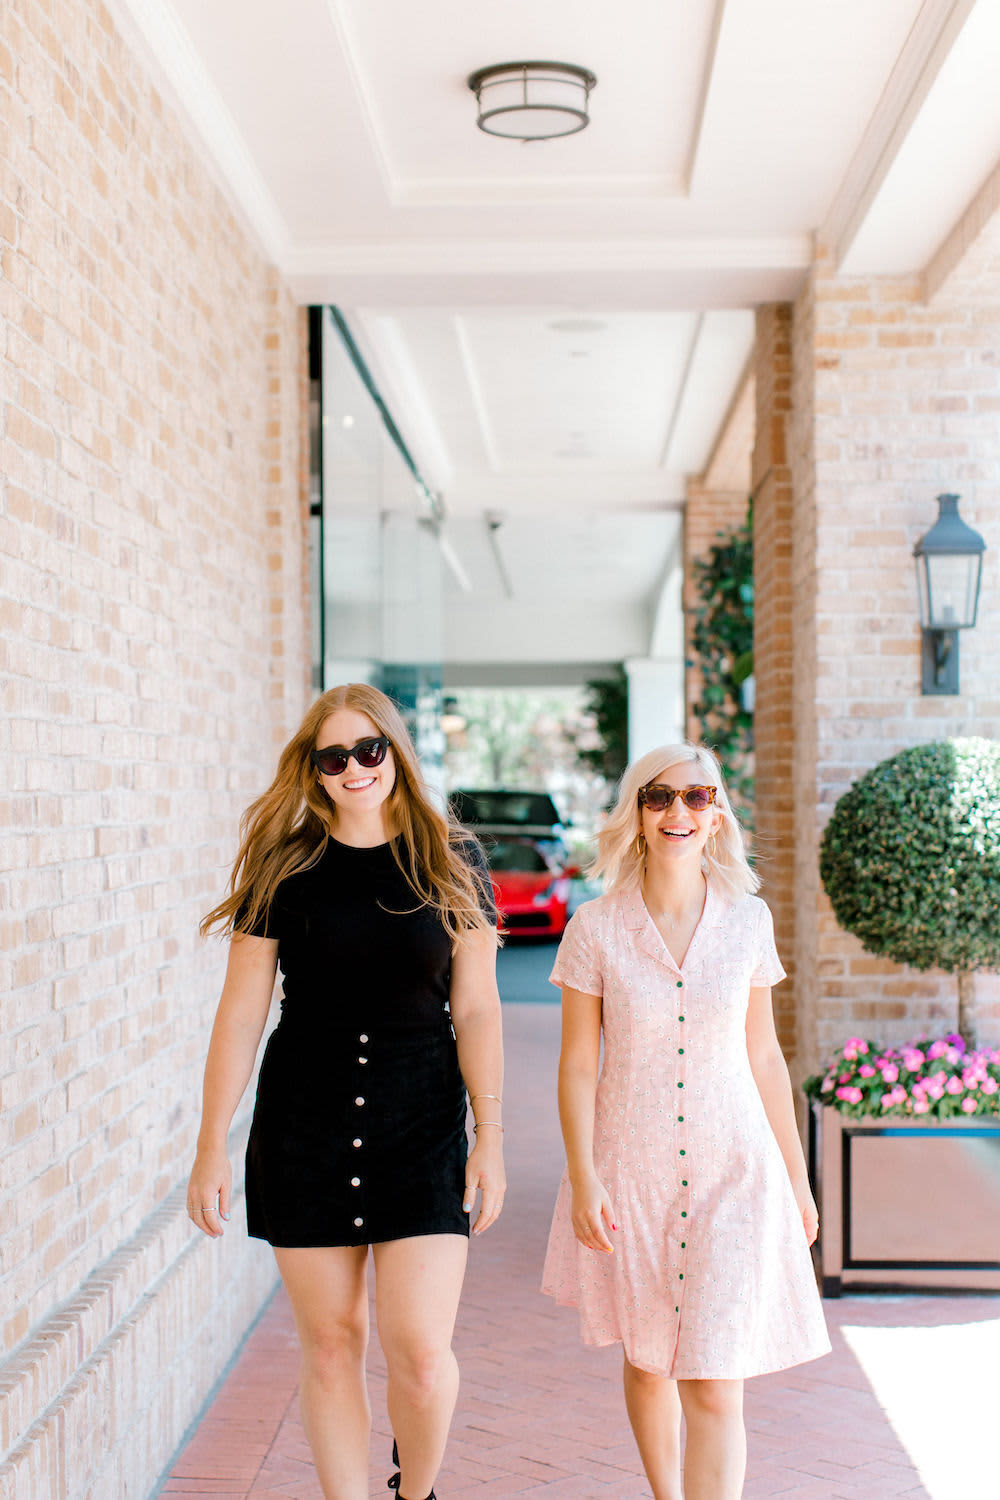 Two happy women business owners walking on a sidewalk